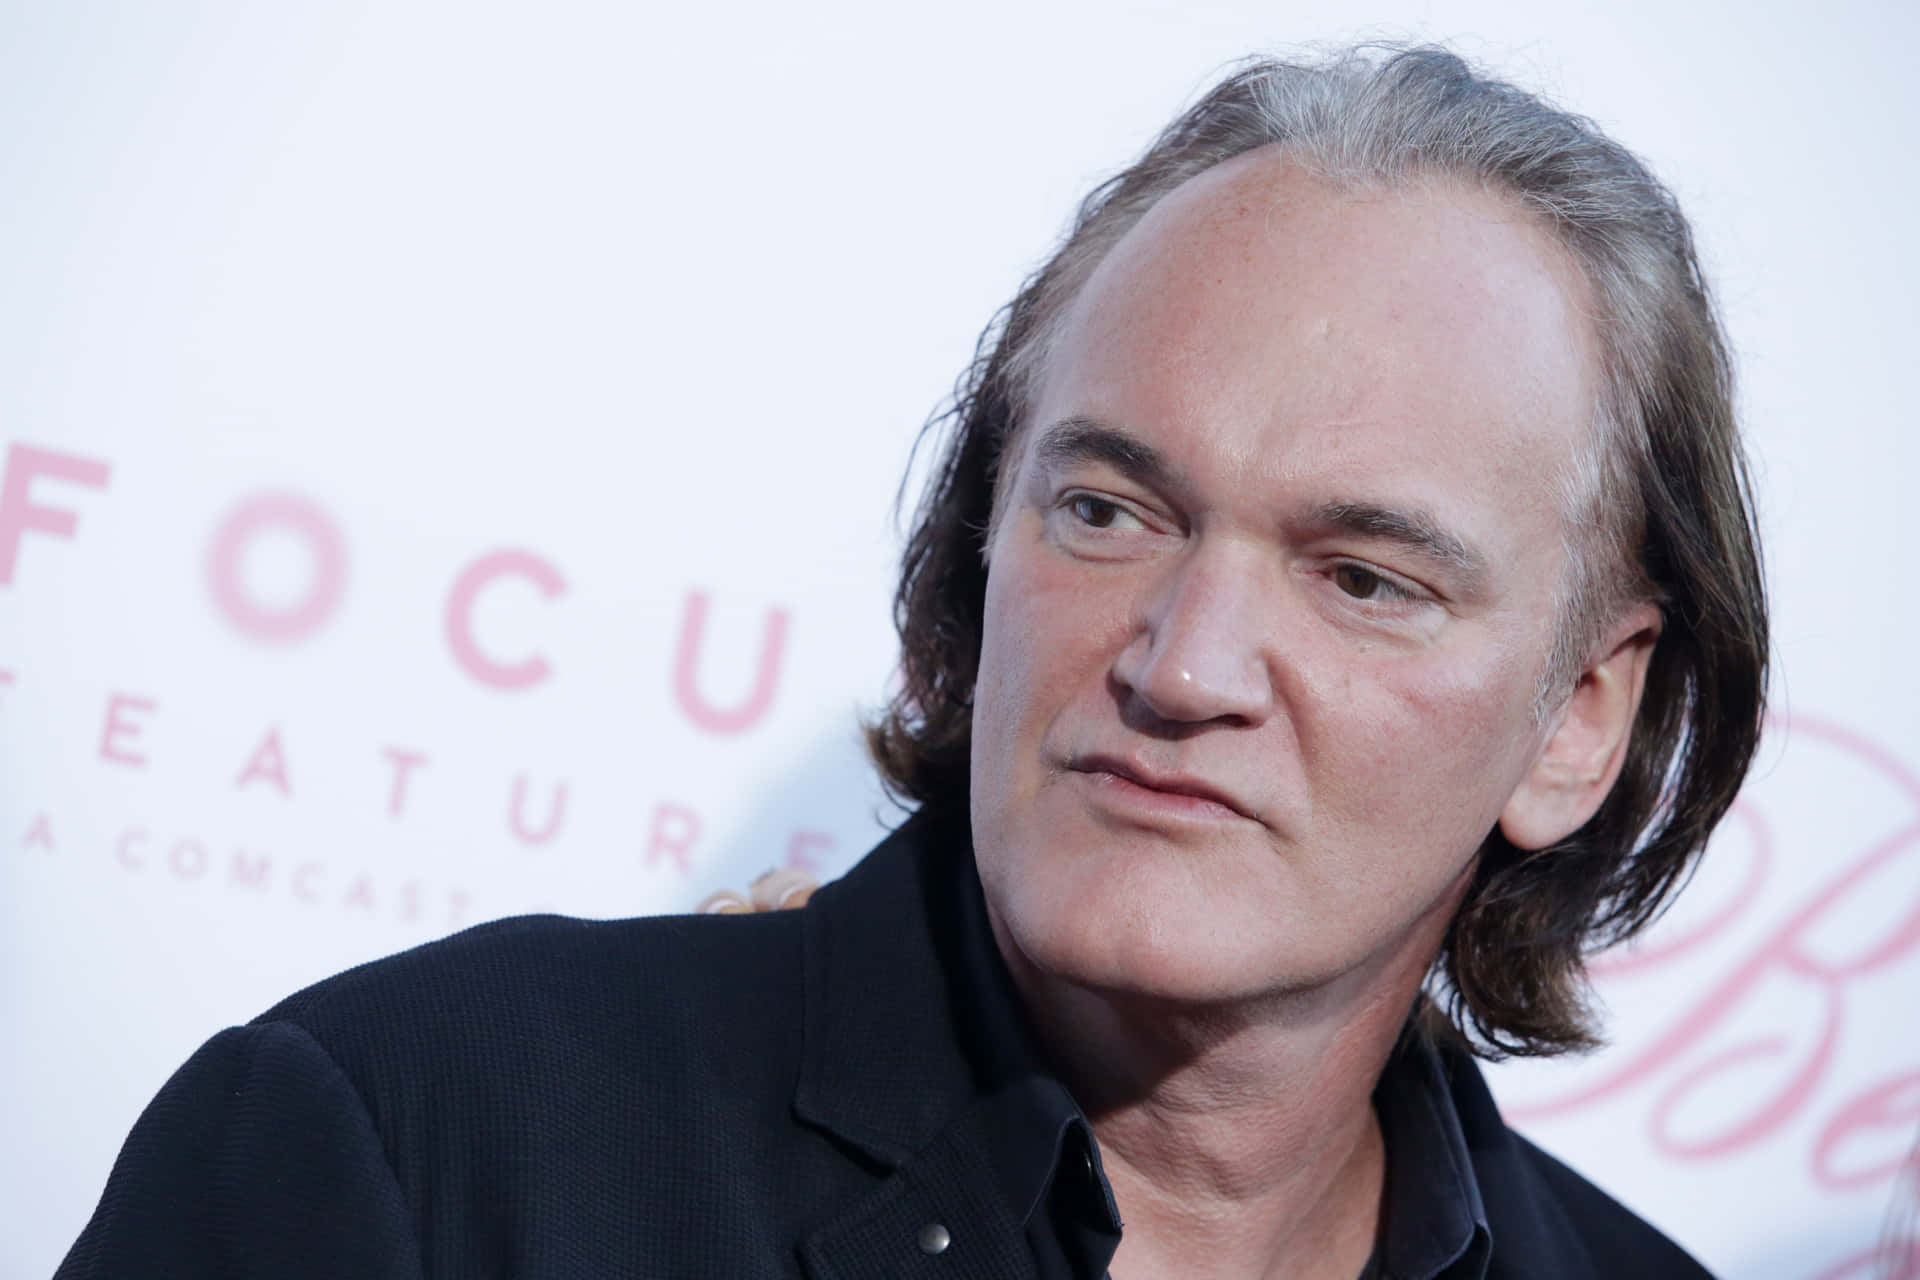 Quentin Tarantinoat Event